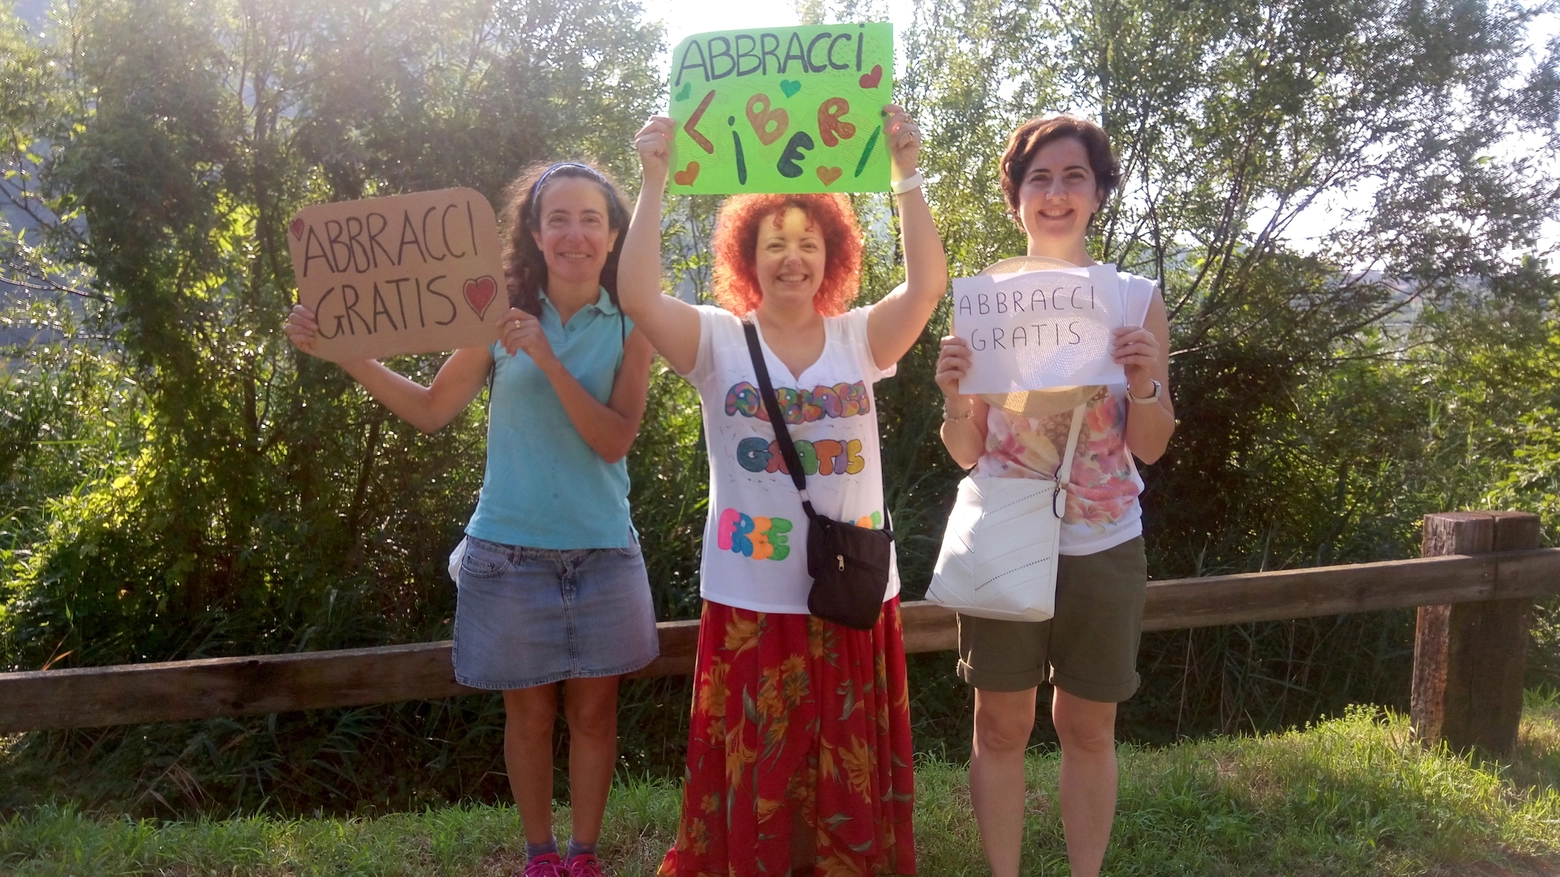 Fiammetta Mandelli, Laura Aliverti, linda Gennuso mostrano i cartelli per gli abbracci gra